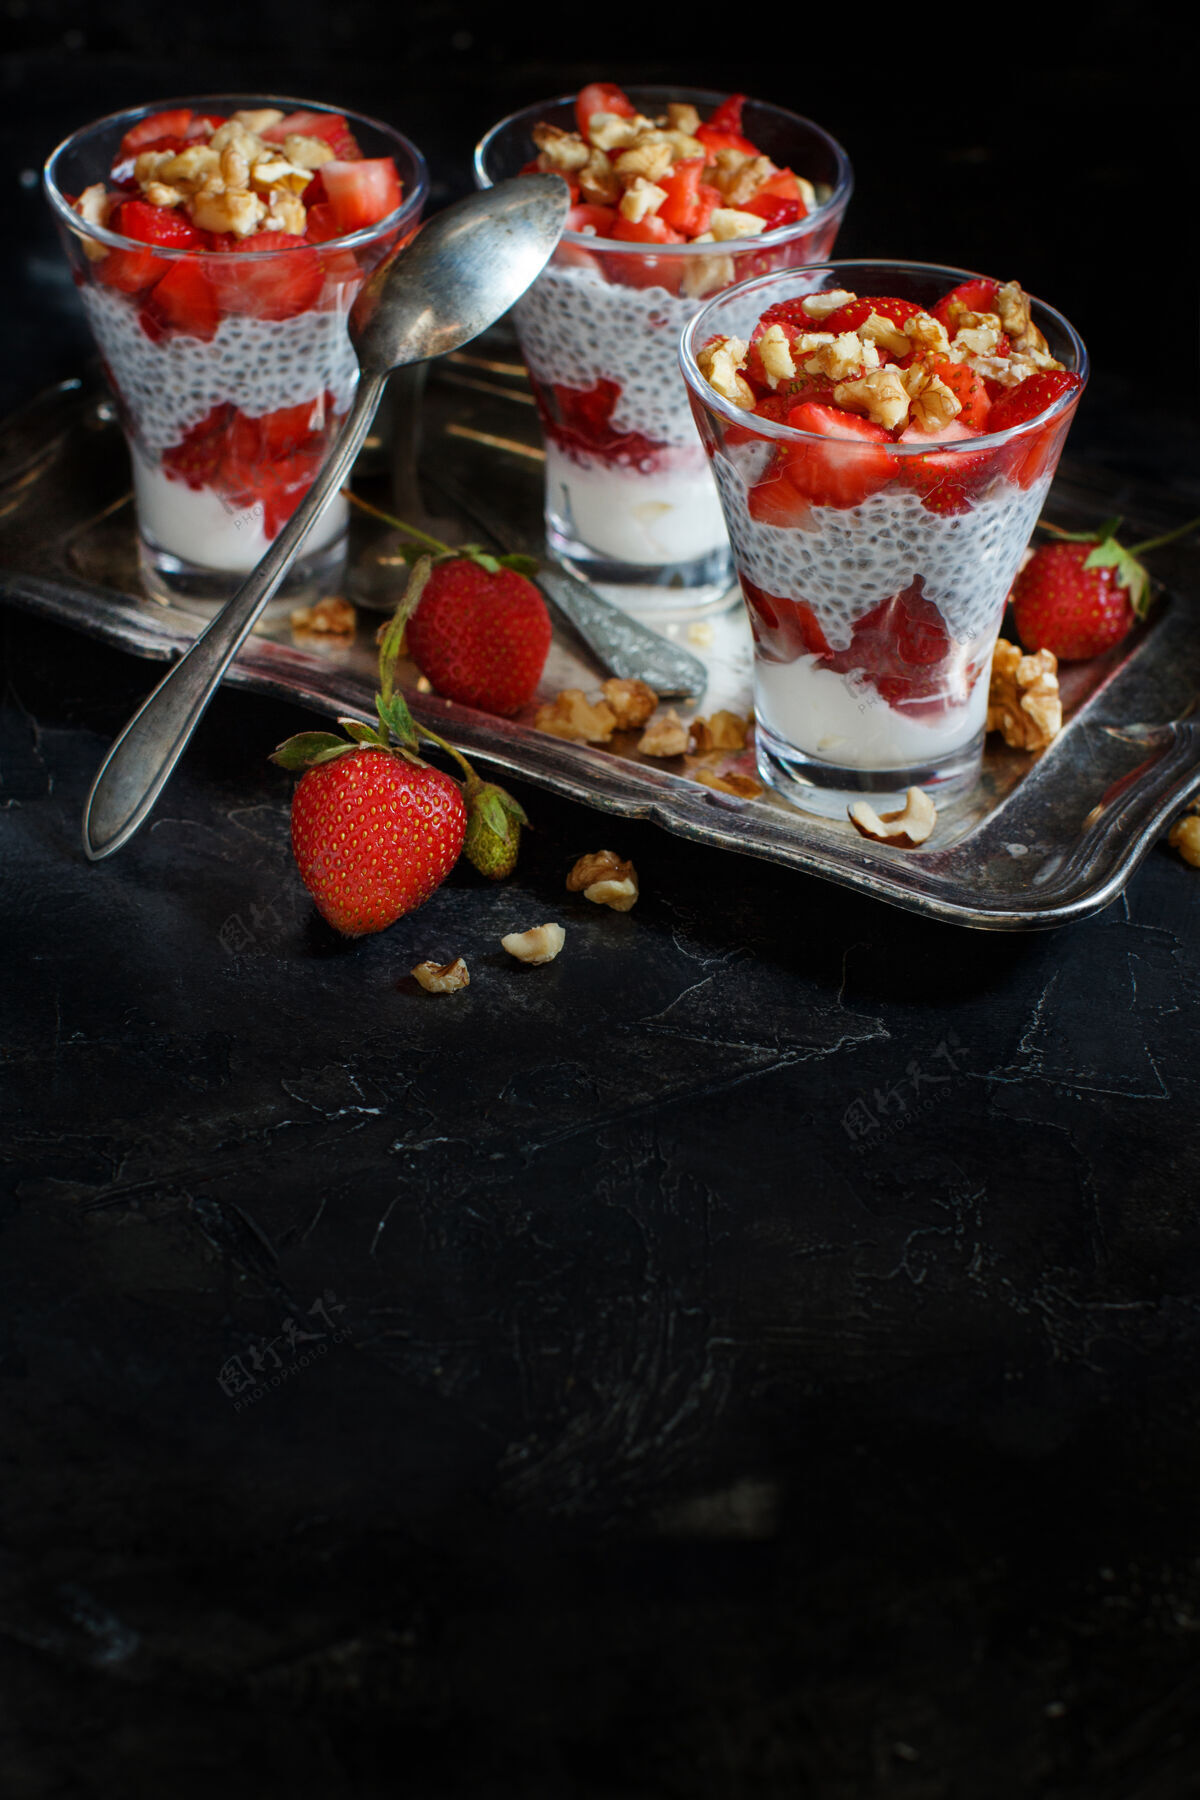 谷类食品希亚布丁草莓冻糕配希腊酸奶和坚果美食芝士乳制品